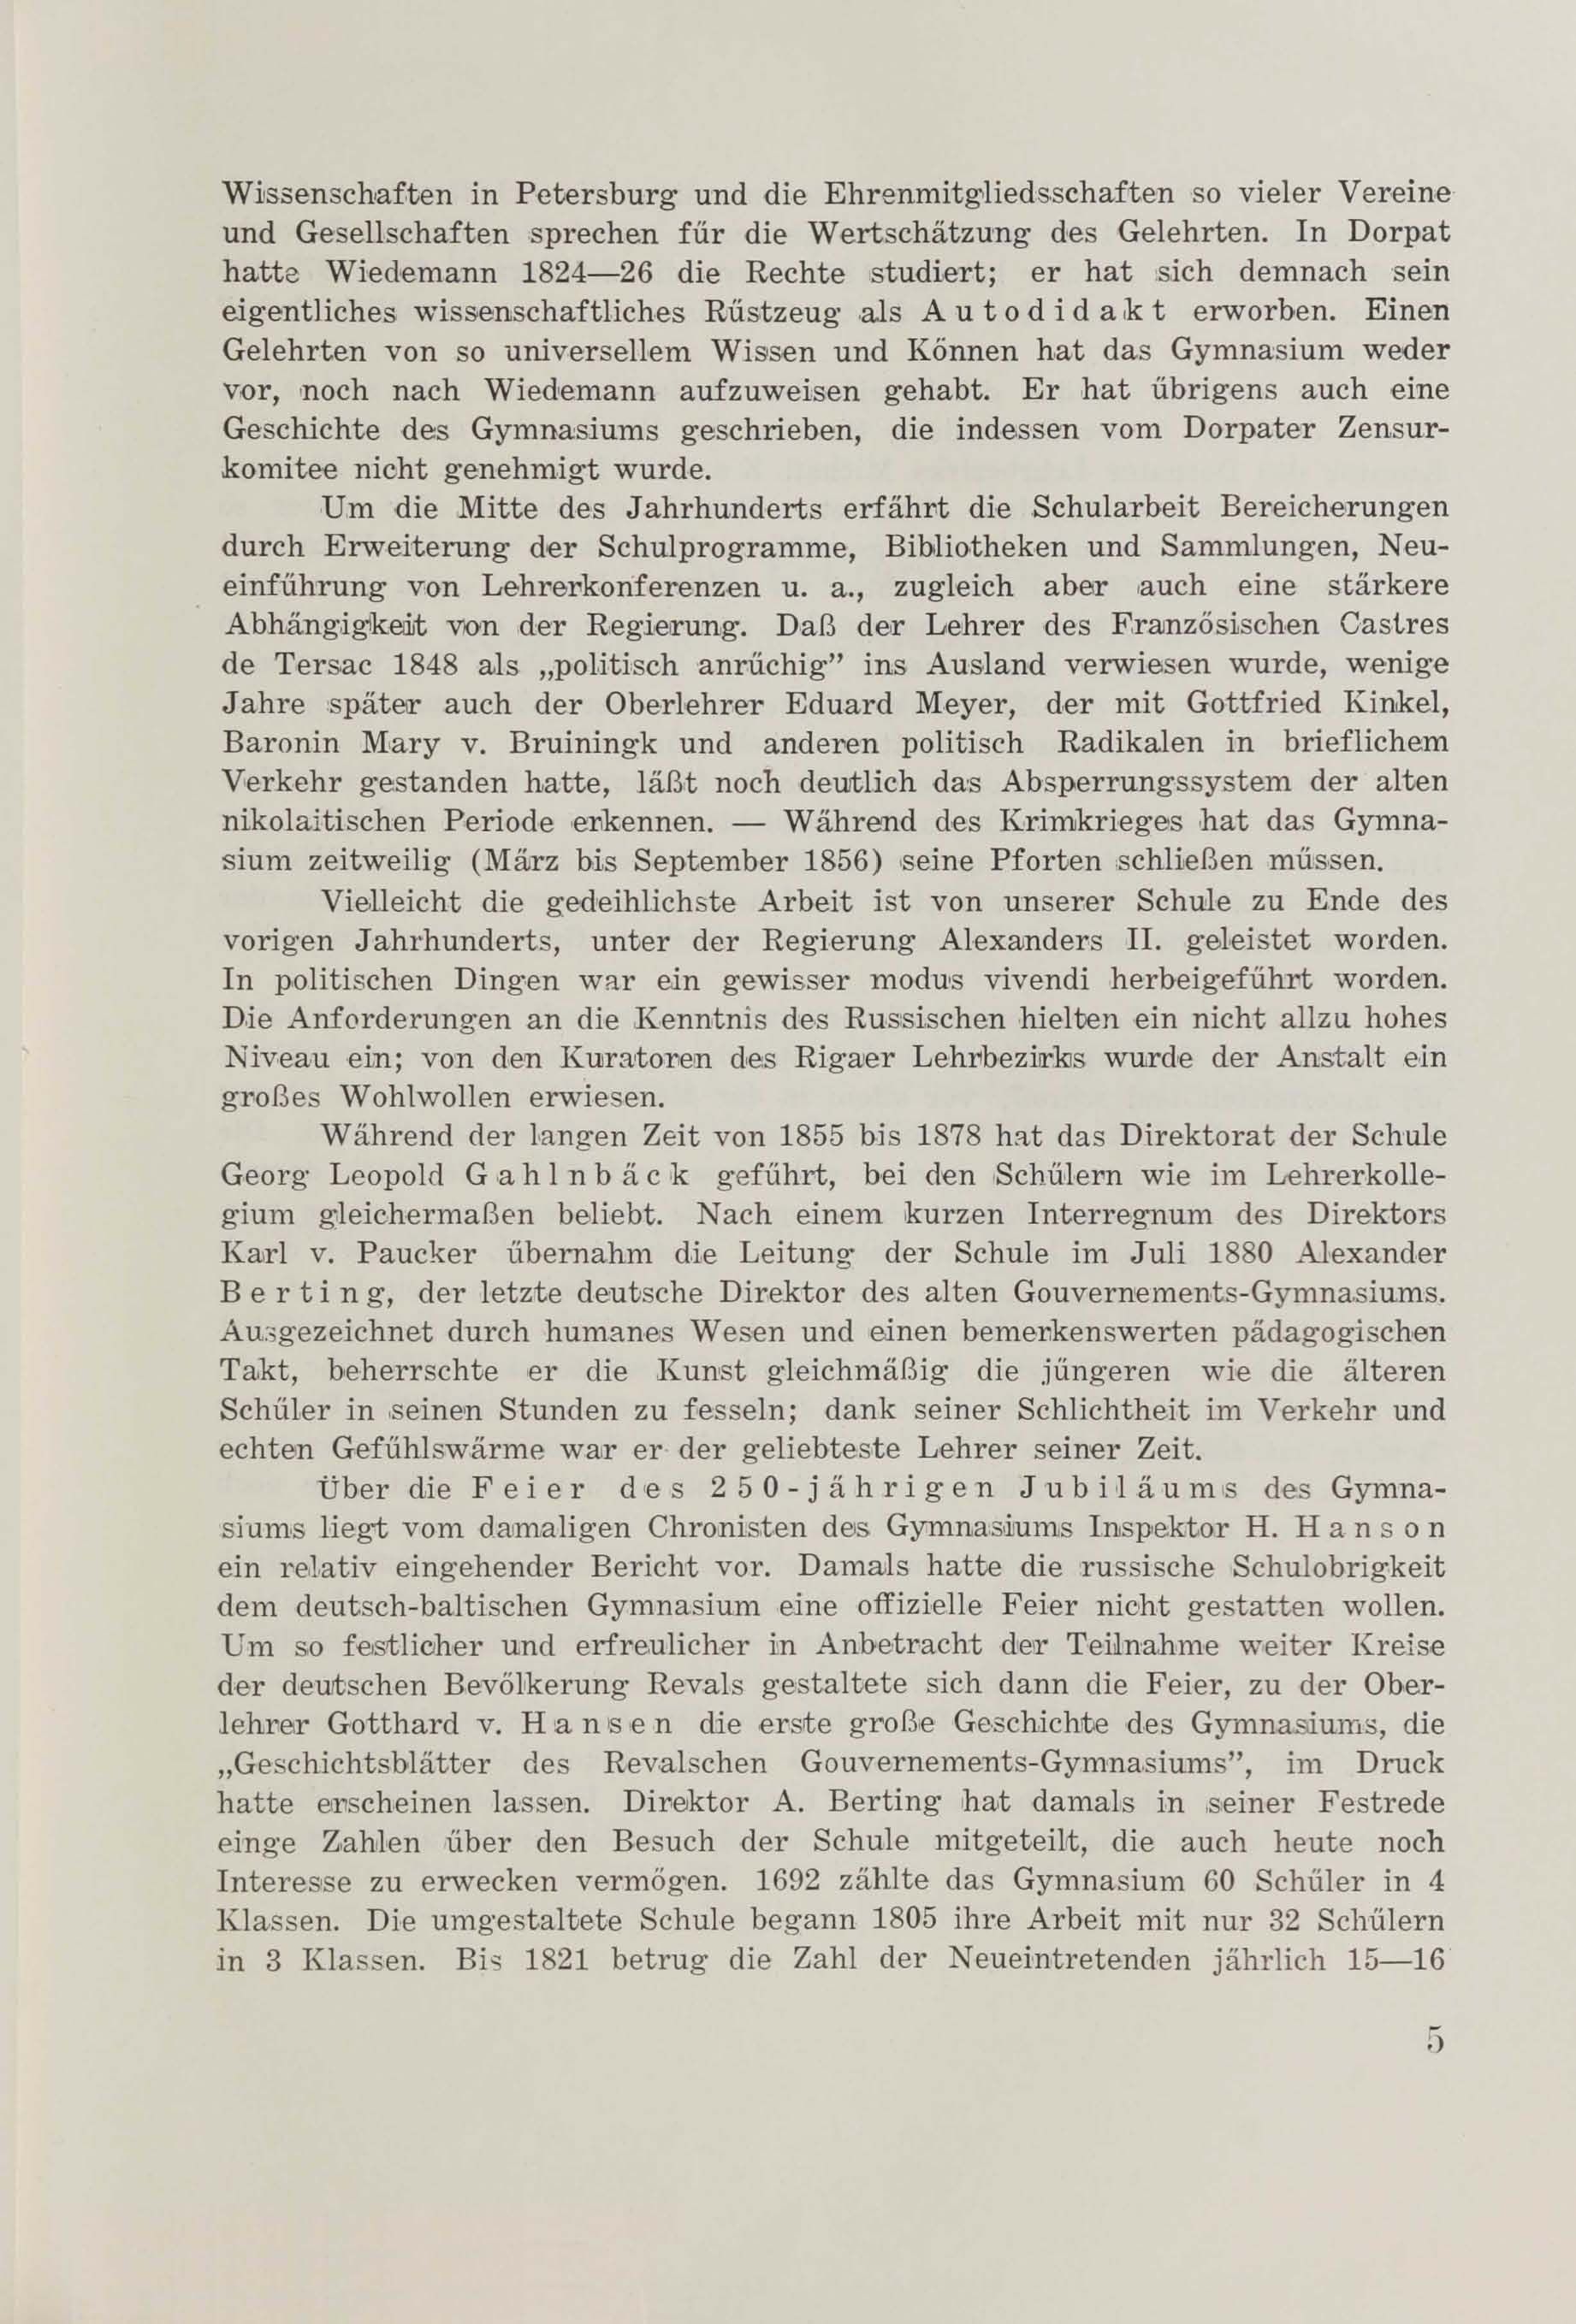 Schüler-Verzeichnis des Revalschen Gouvernements-Gymnasiums 1805–1890 (1931) | 16. (5) Main body of text